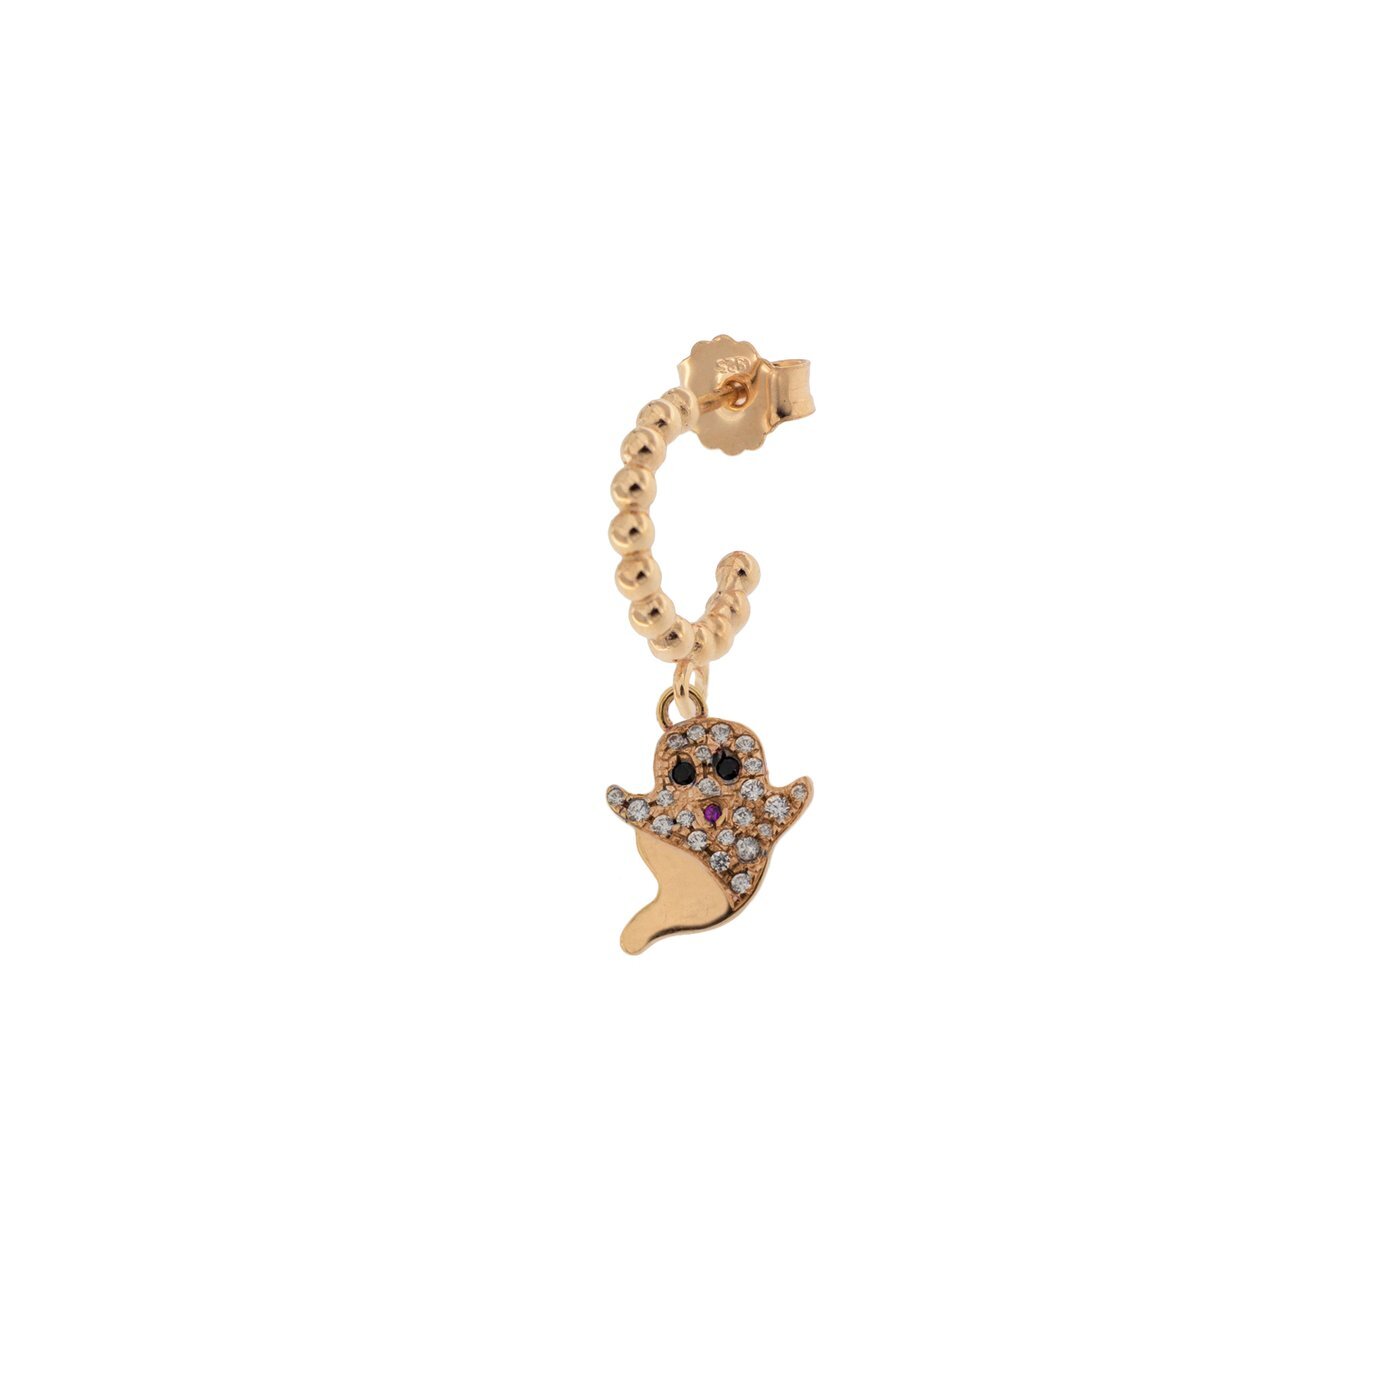 Rue Des Mille mono orecchino in argento 925 placcato in oro rosa 18 kt con soggetto "fantasmino" e zirconi - Codice mono orecchino: ORZ-007 FANT